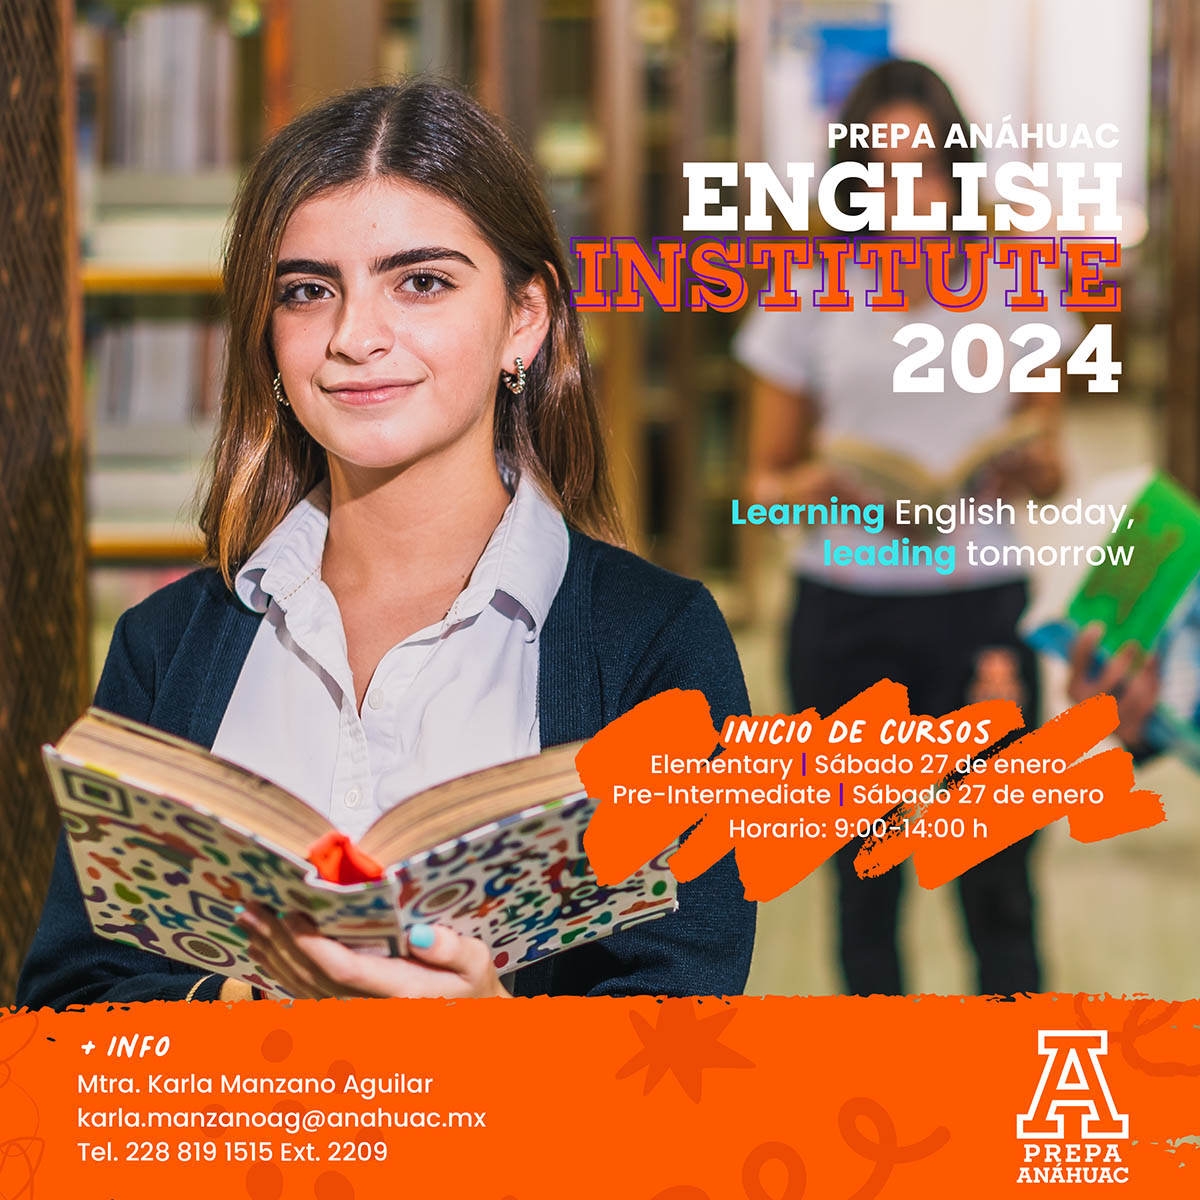 English Institute 2024